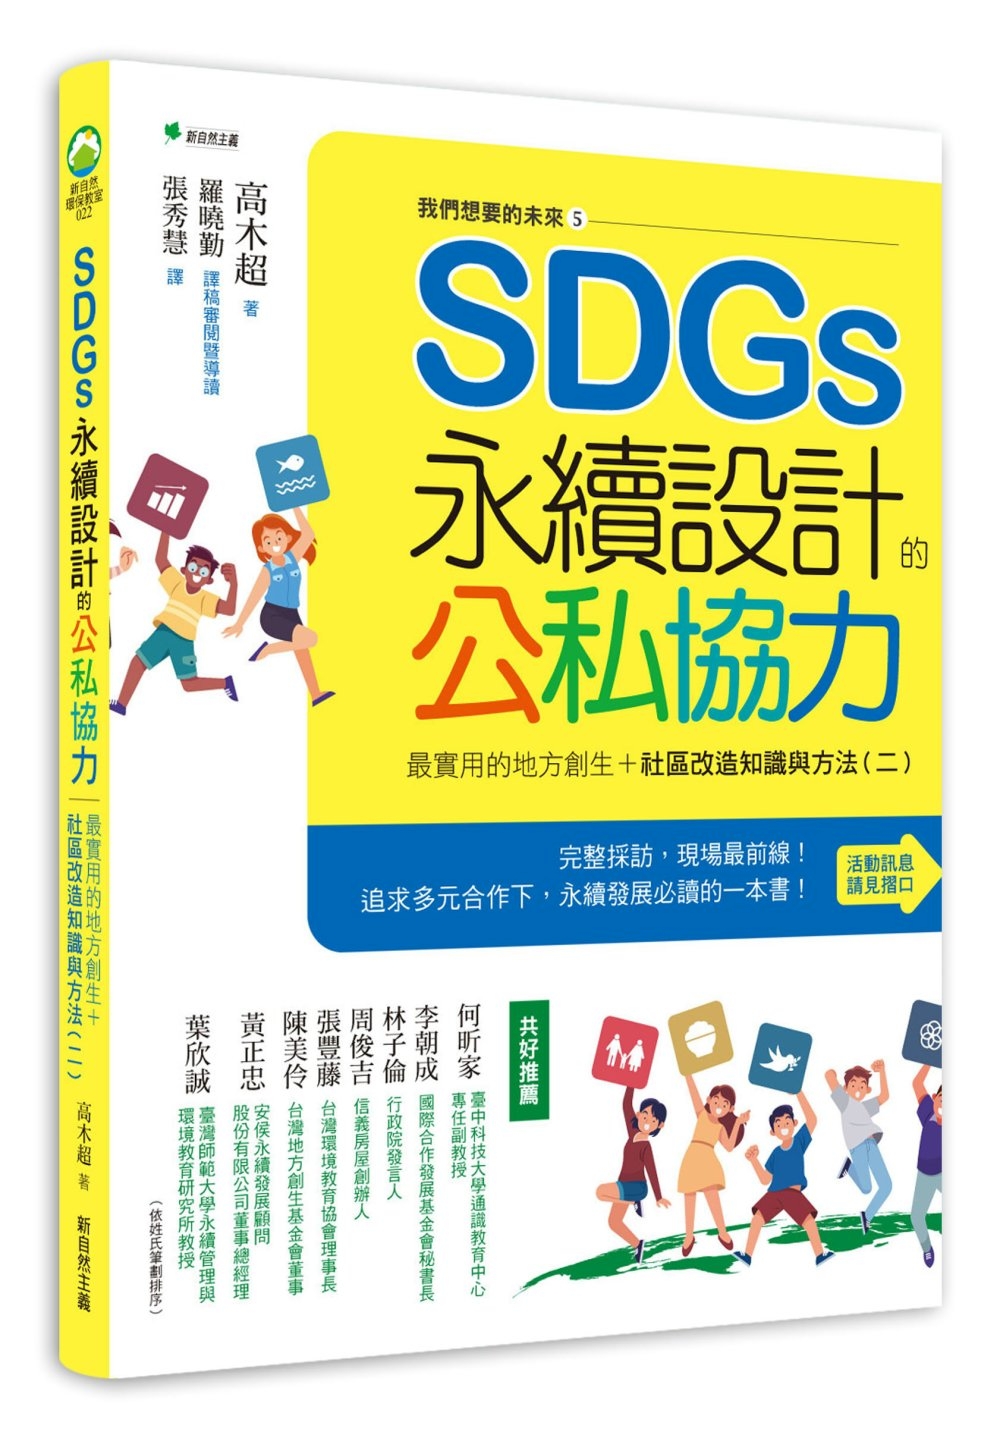 我們想要的未來⑤SDGs ×公民合作-解決地方課題之永續設計：連結企業、NGO、與NPO的日本公私合作實例